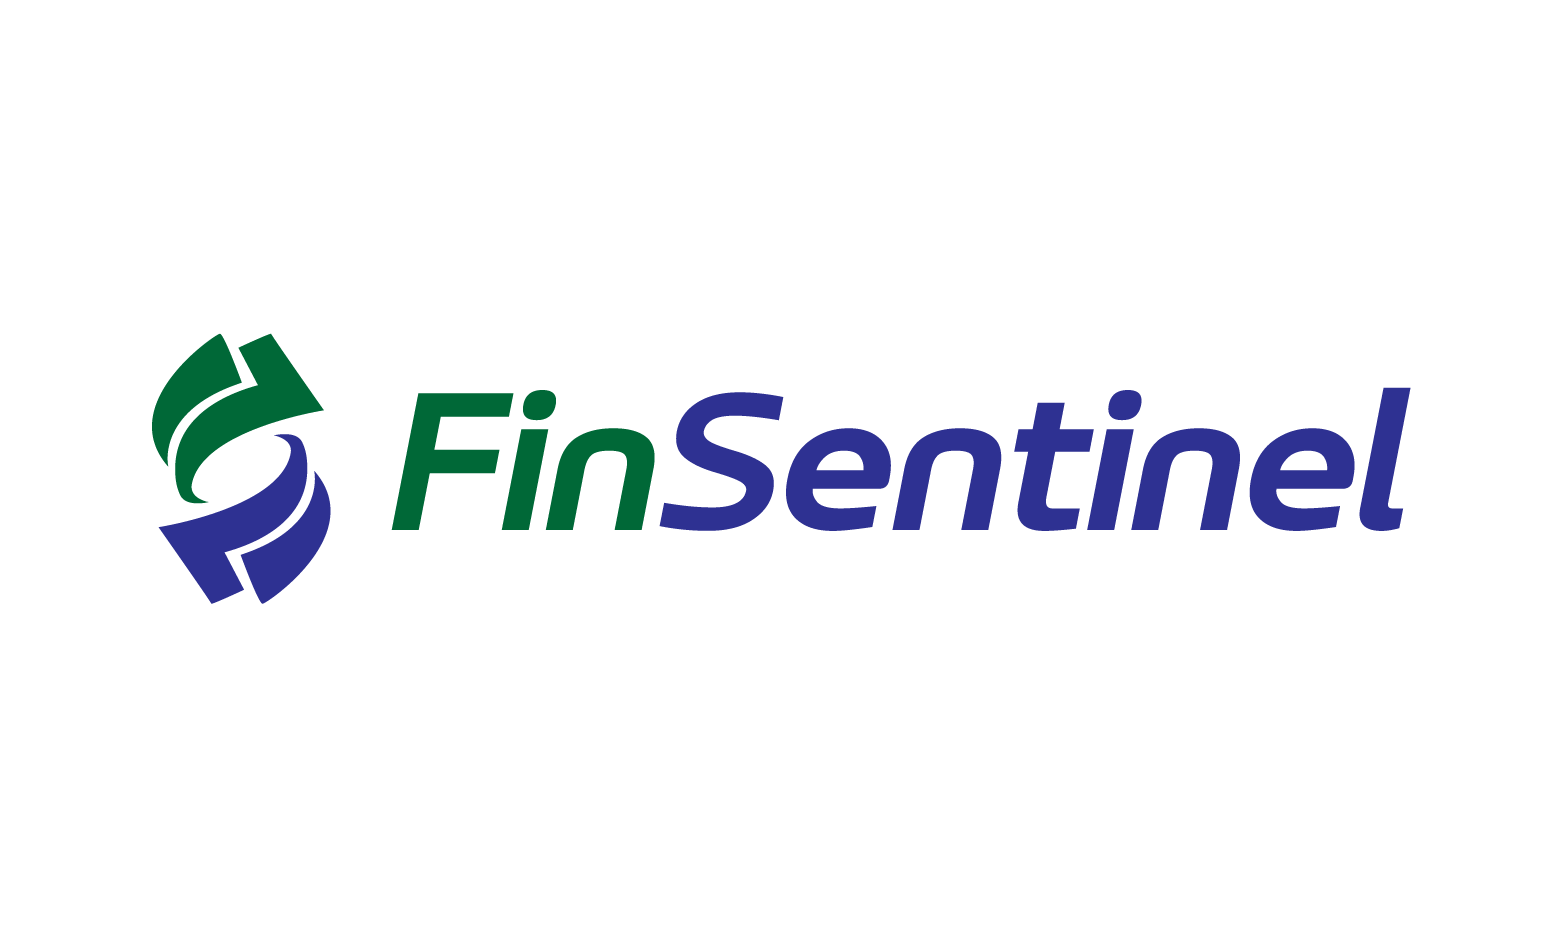 FinSentinel.com - Creative brandable domain for sale